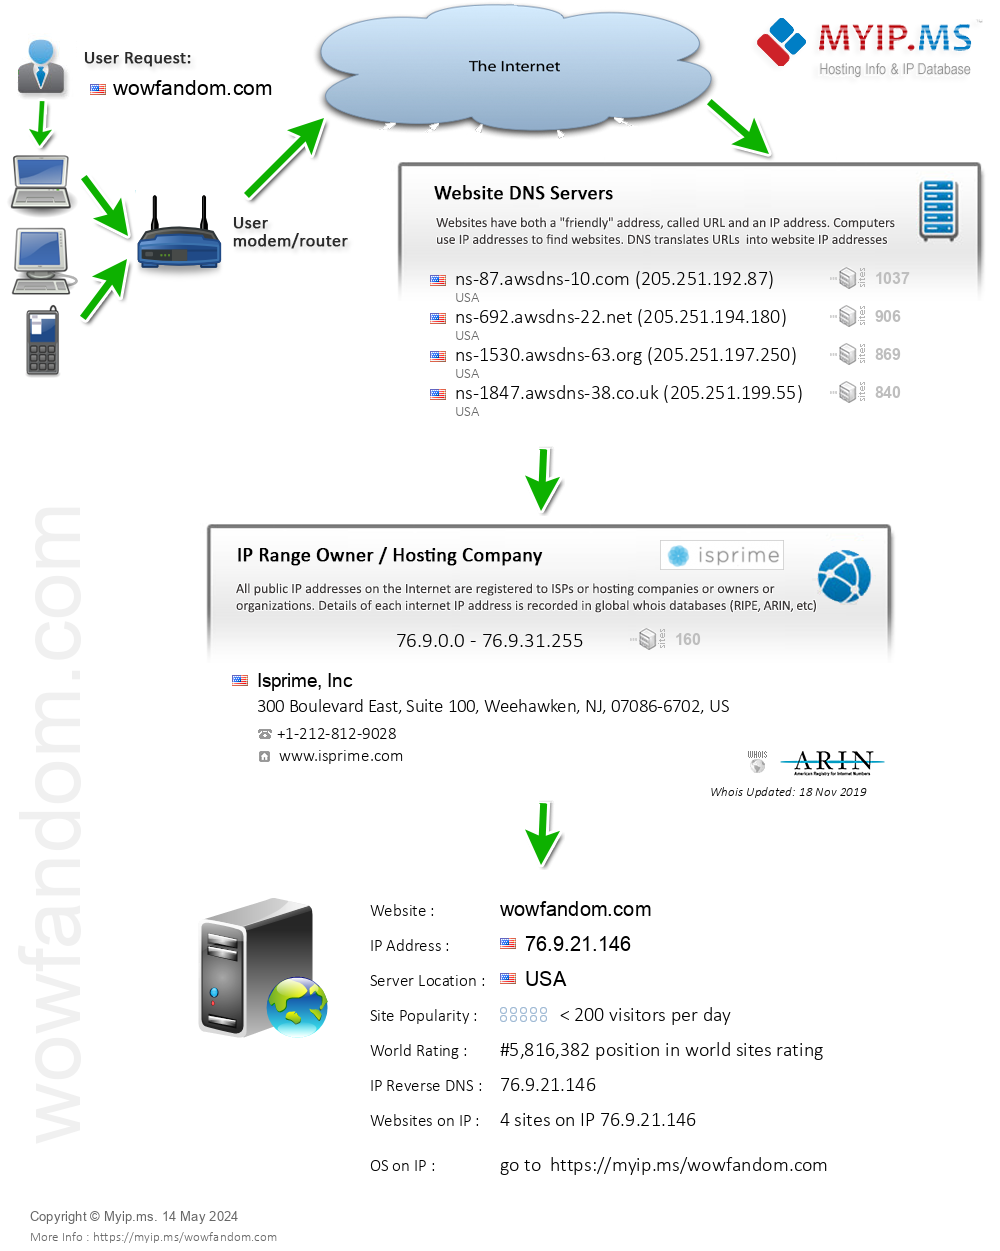 Wowfandom.com - Website Hosting Visual IP Diagram